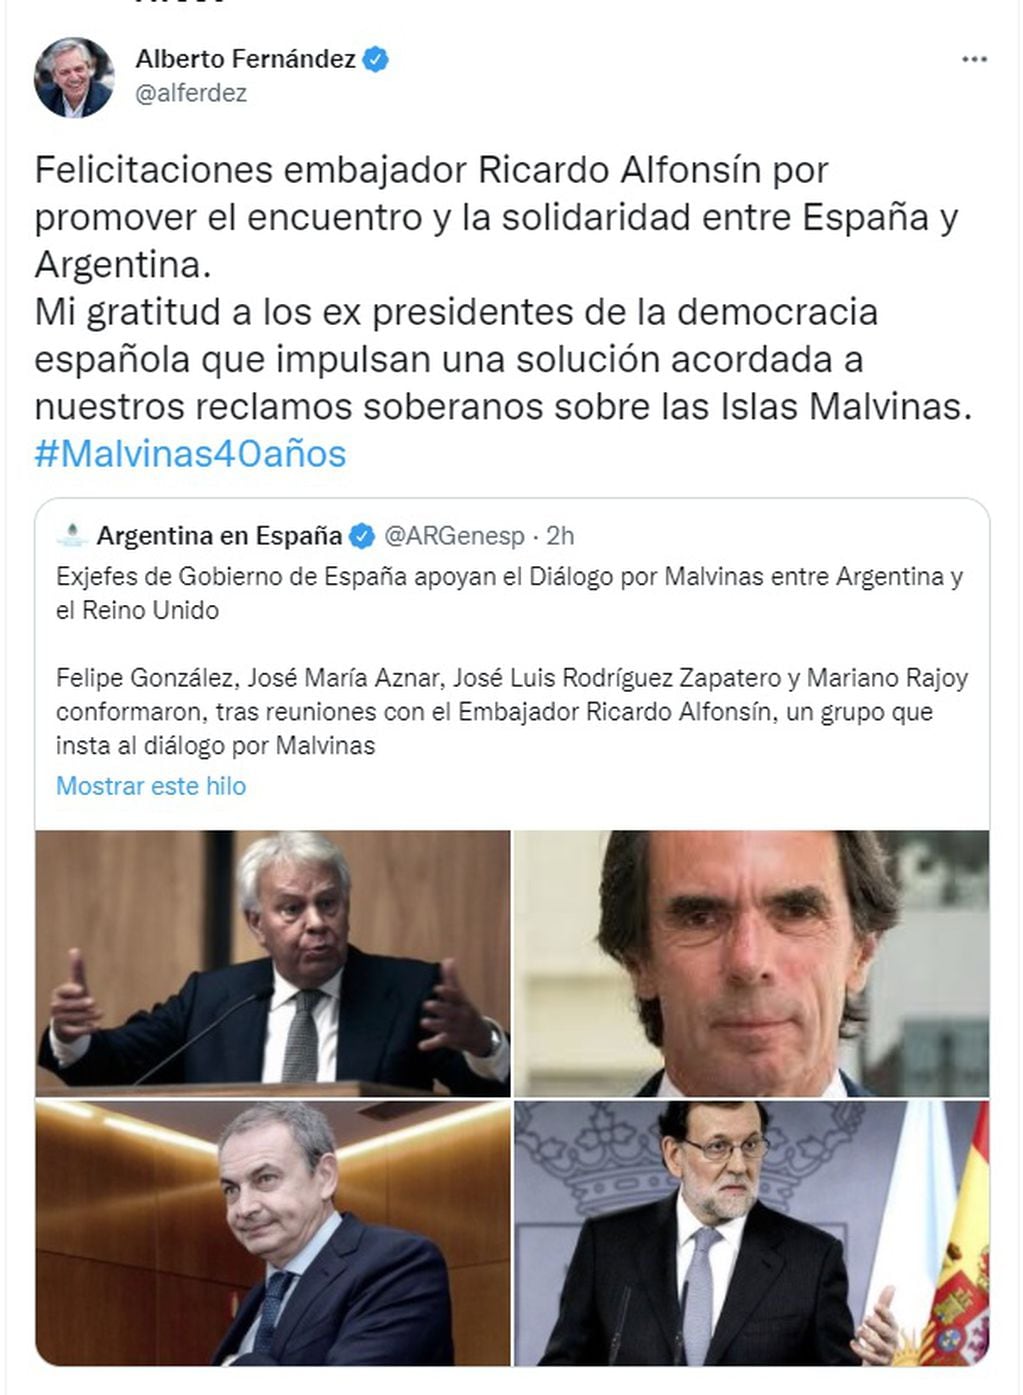 Alberto agradeció el apoyo e ex presidentes españoles por Malvinas